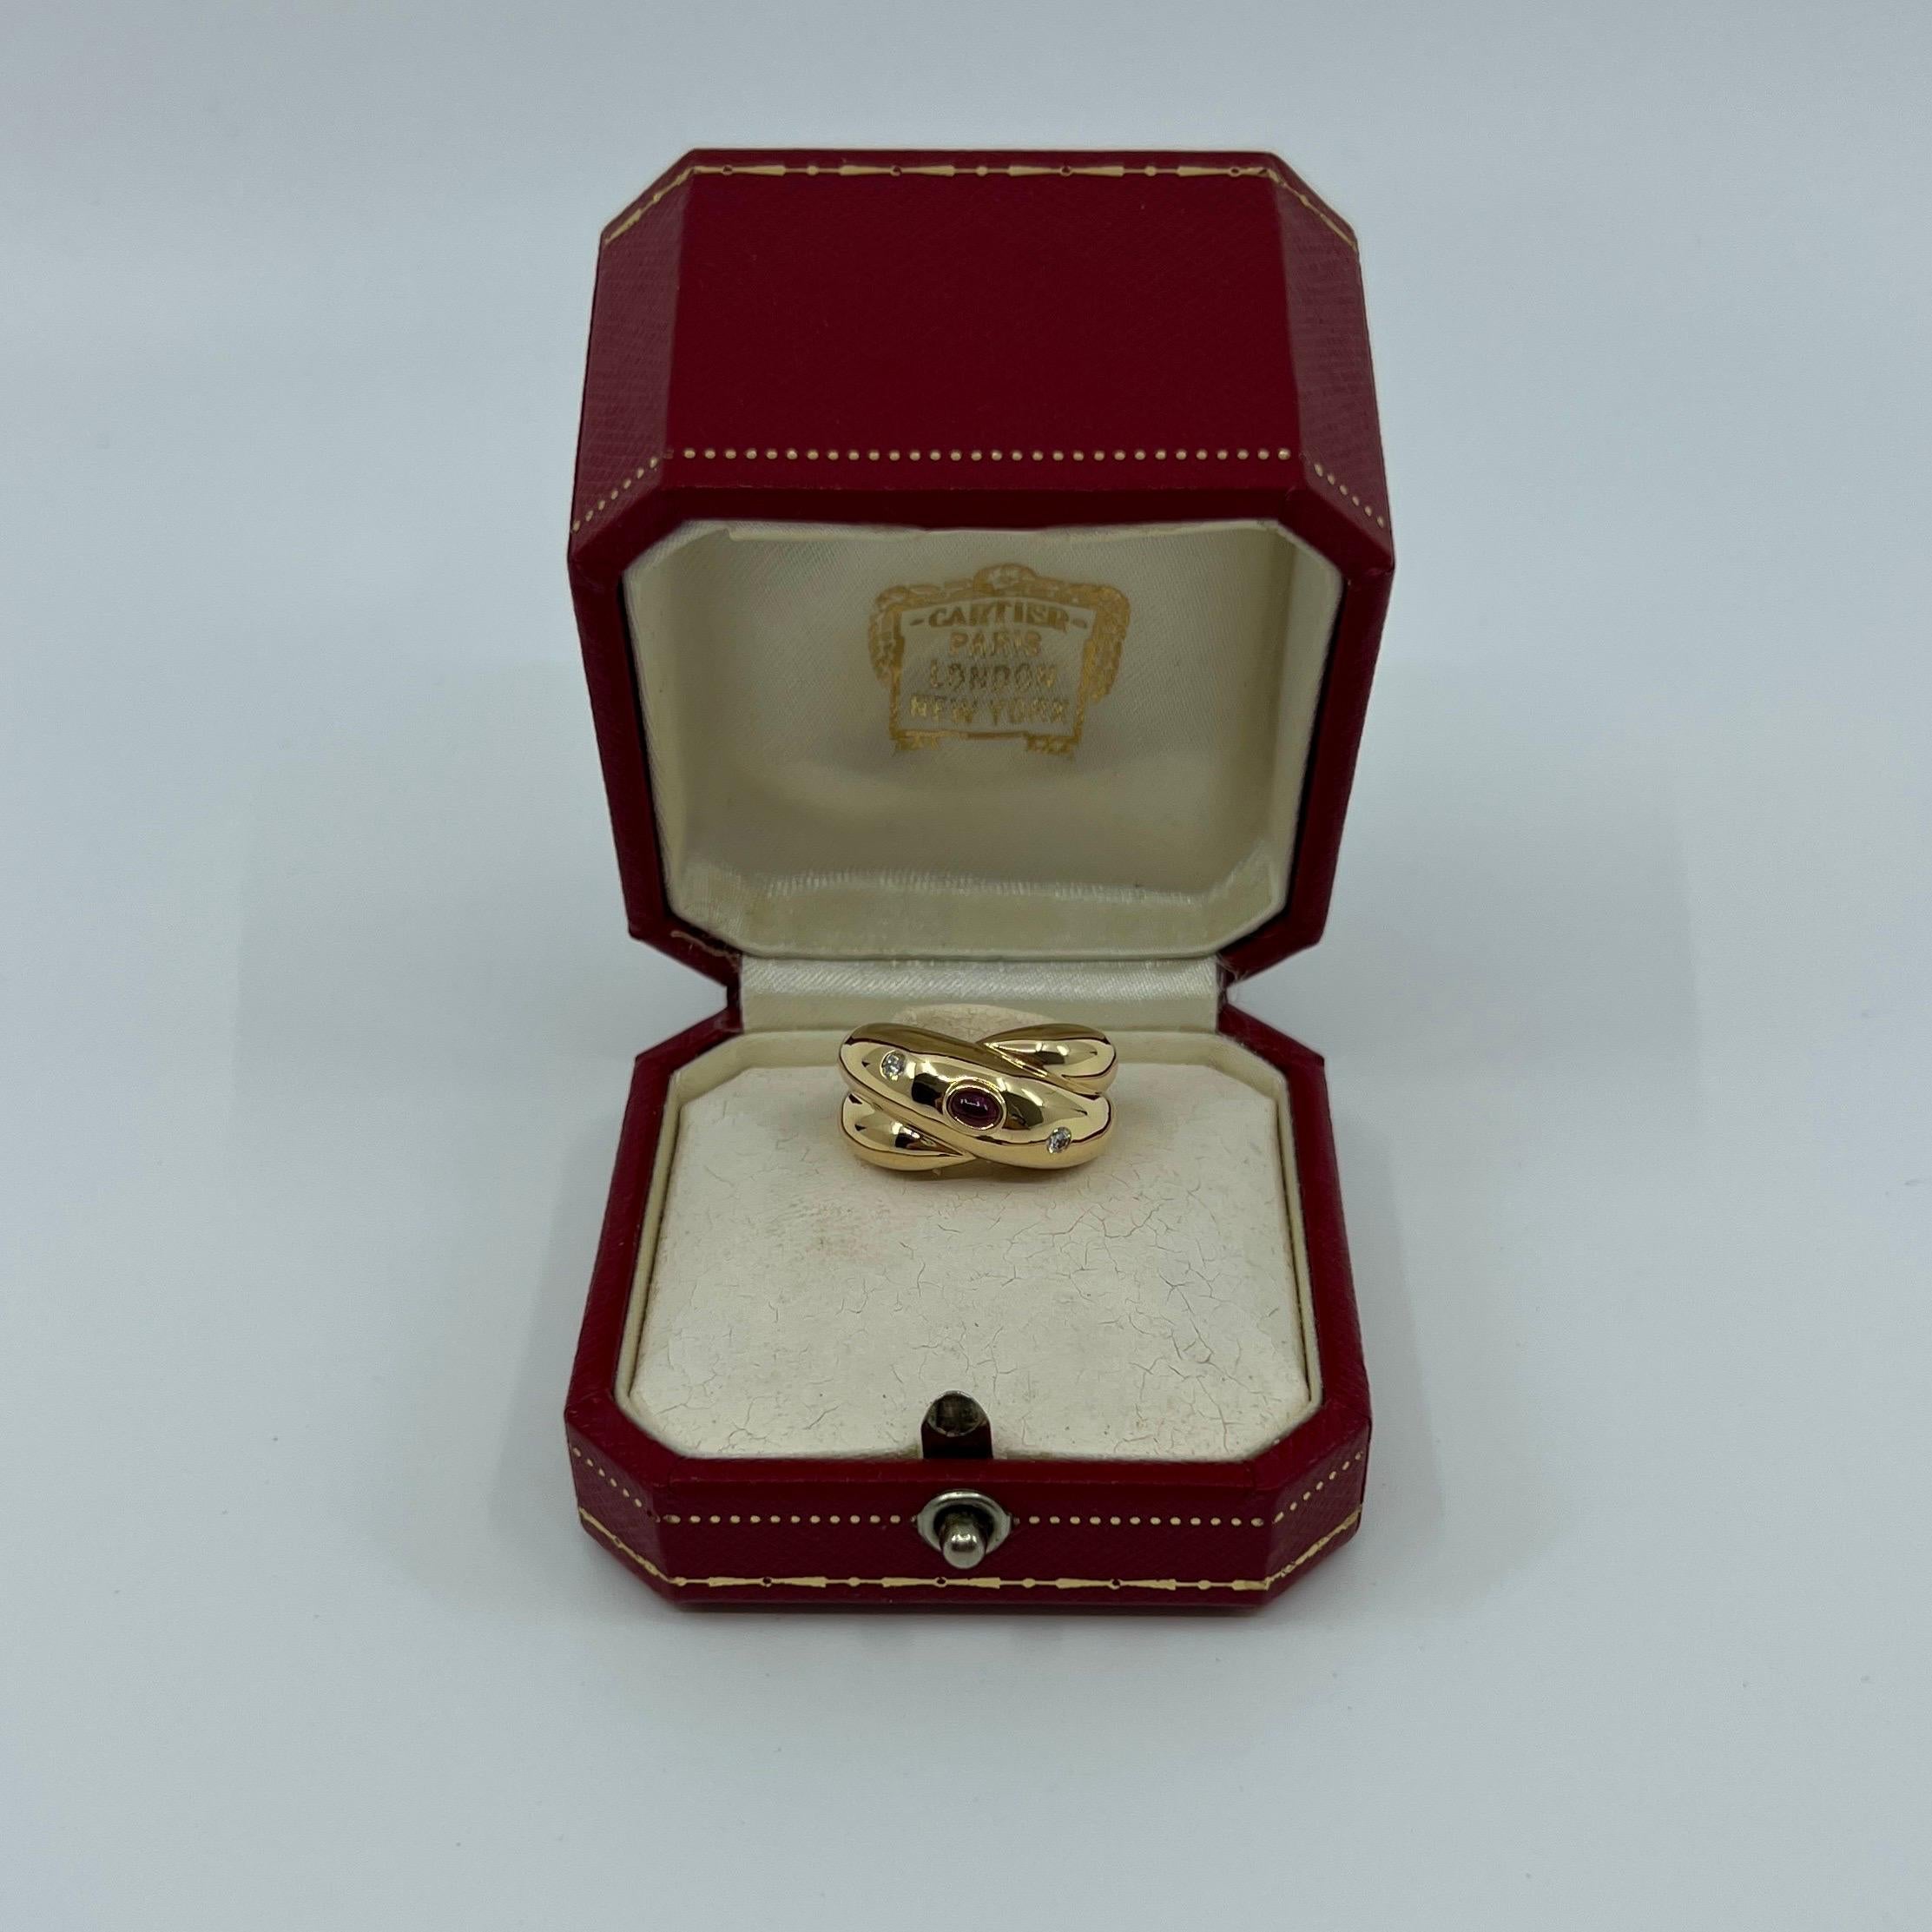 Très rare Vintage Cartier Rubis & Diamant Corize Bague dôme en or jaune 18k

Superbe bague en or jaune sertie d'un cabochon de rubis rouge foncé et de deux diamants ronds de taille brillant. 
Les maisons de haute joaillerie comme Cartier n'utilisent